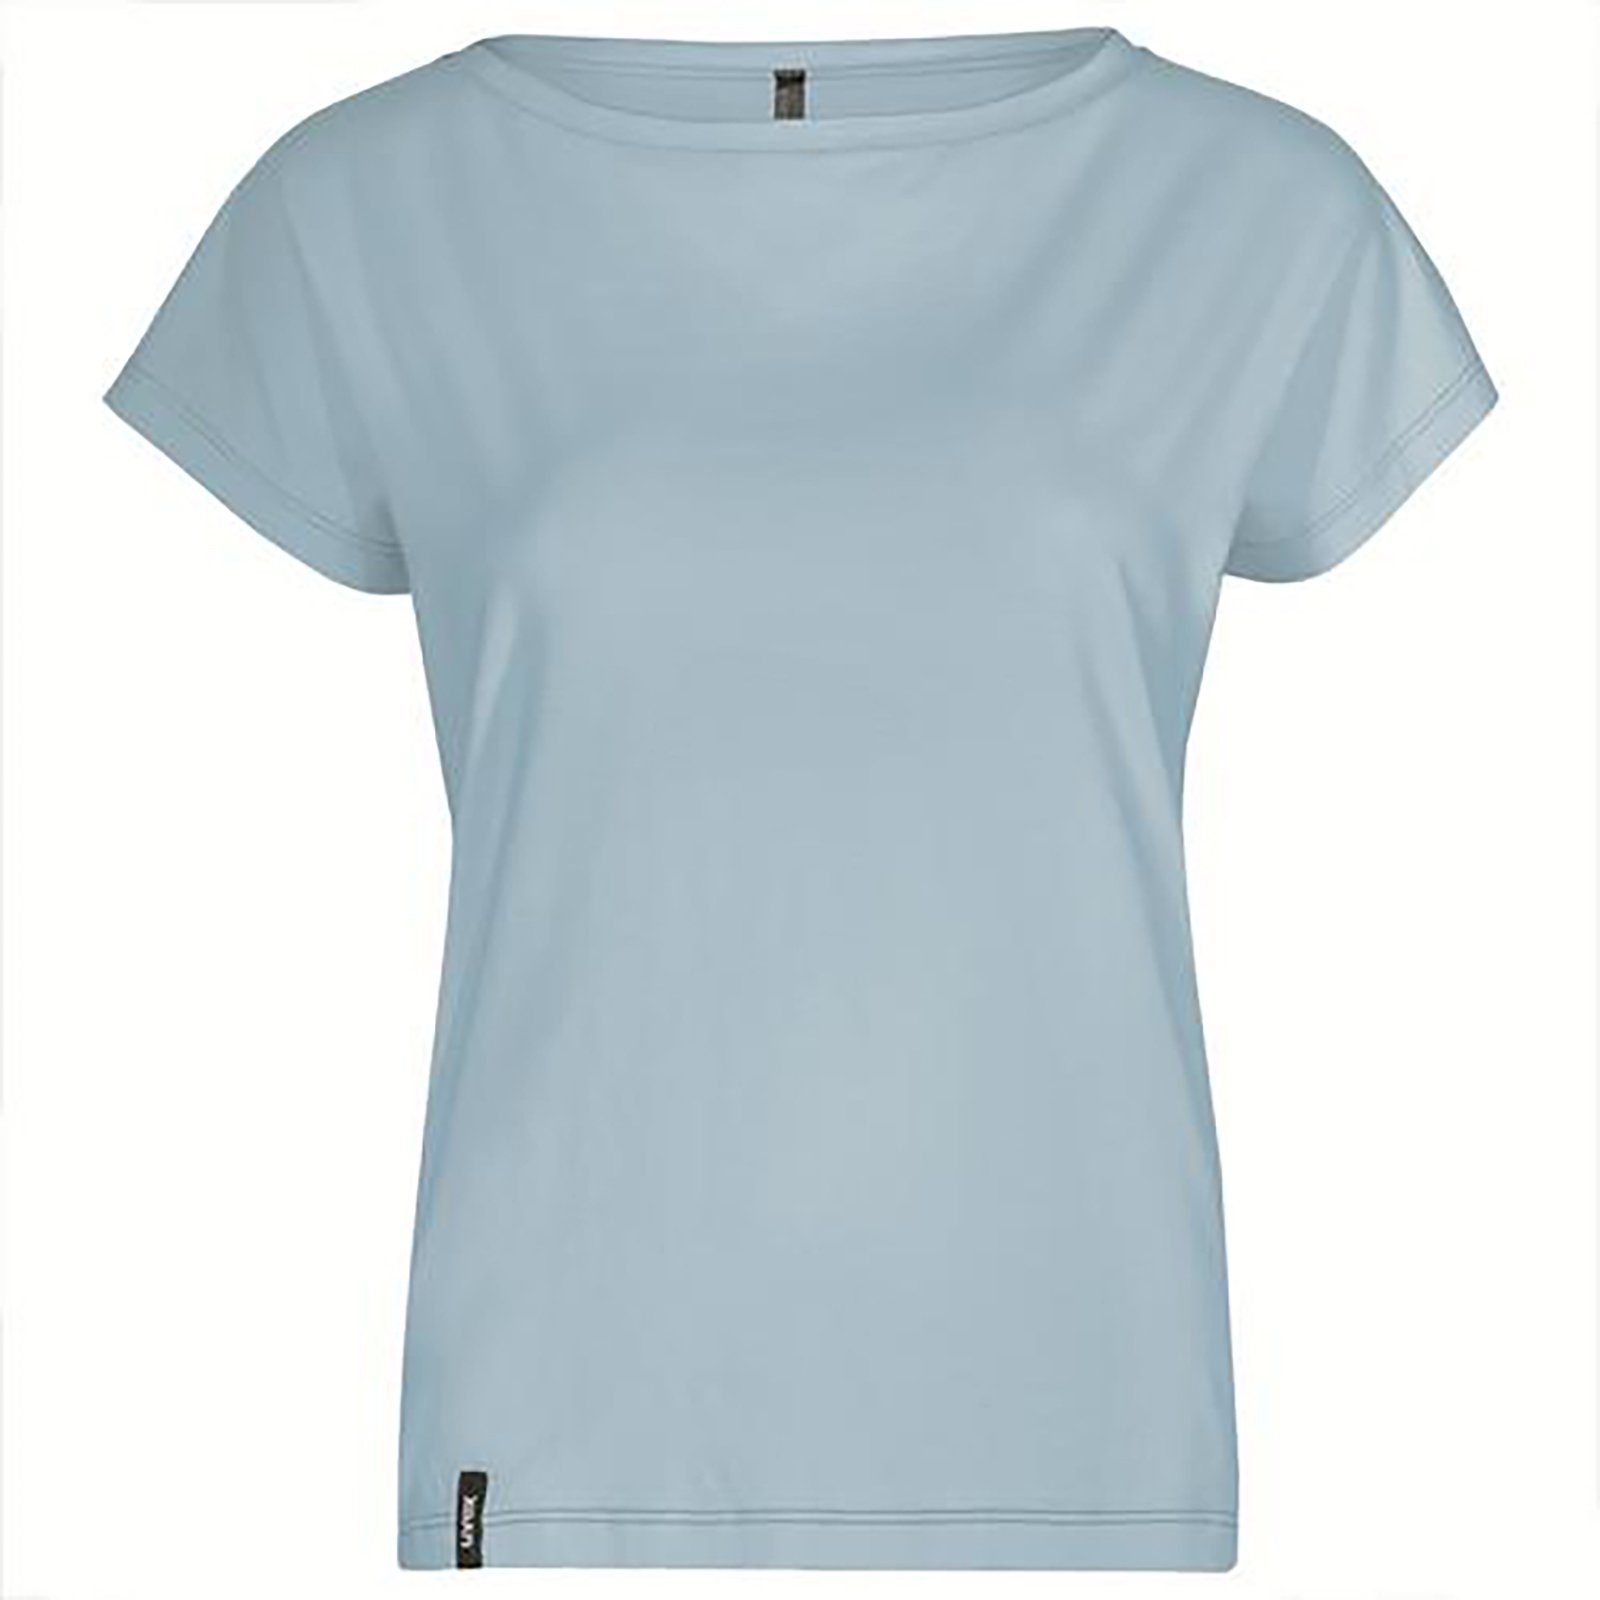 Damen suXXeed greencycle blau, Uvex T-Shirt T-Shirt hellblau